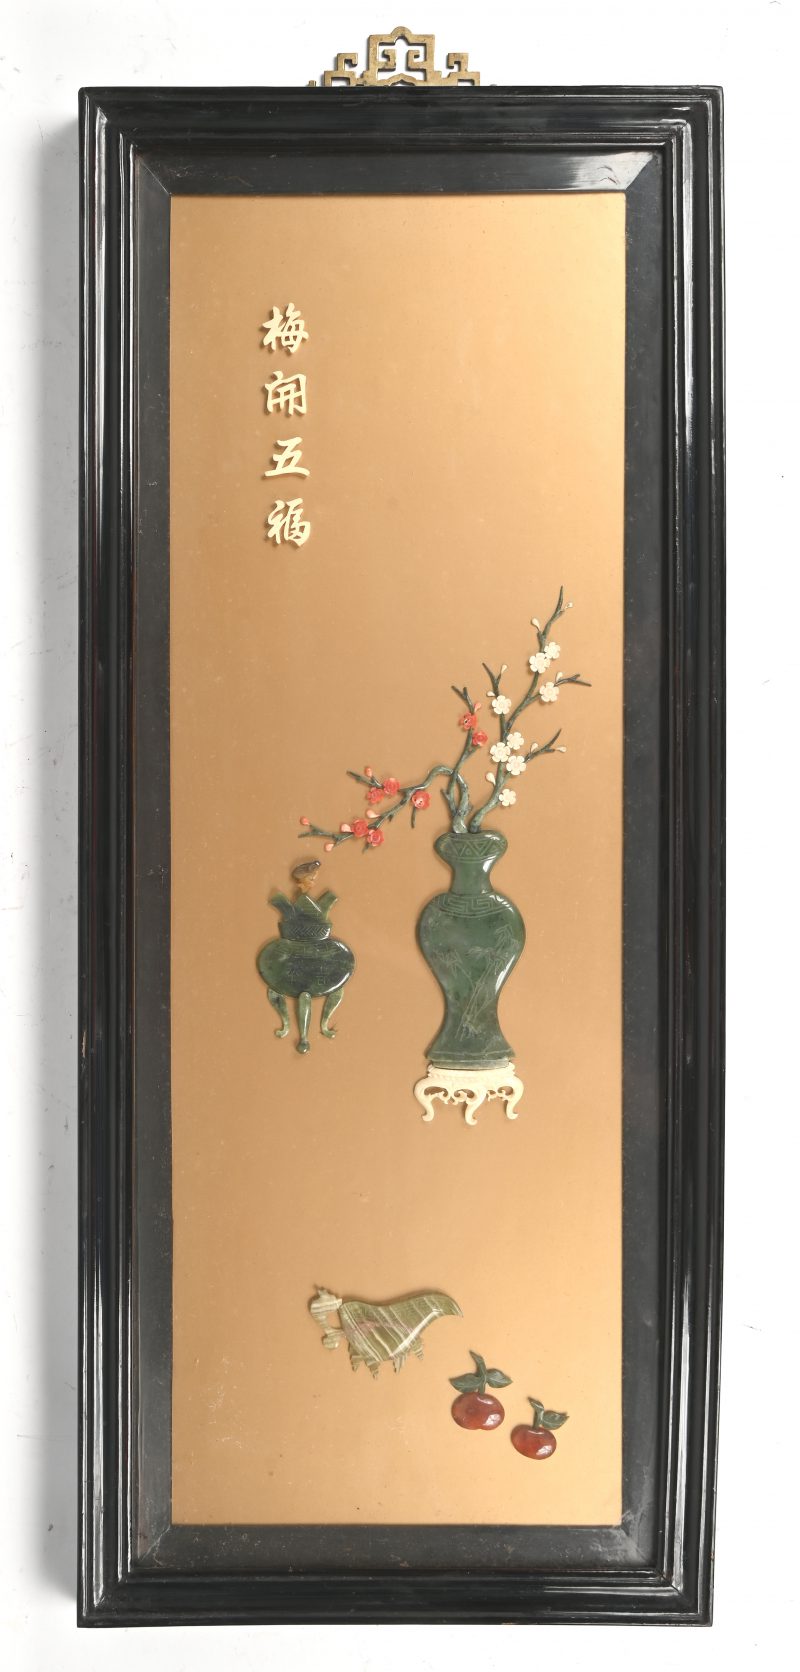 Een Chinees stilleven pietra dura op paneel uit Jade en speksteen.